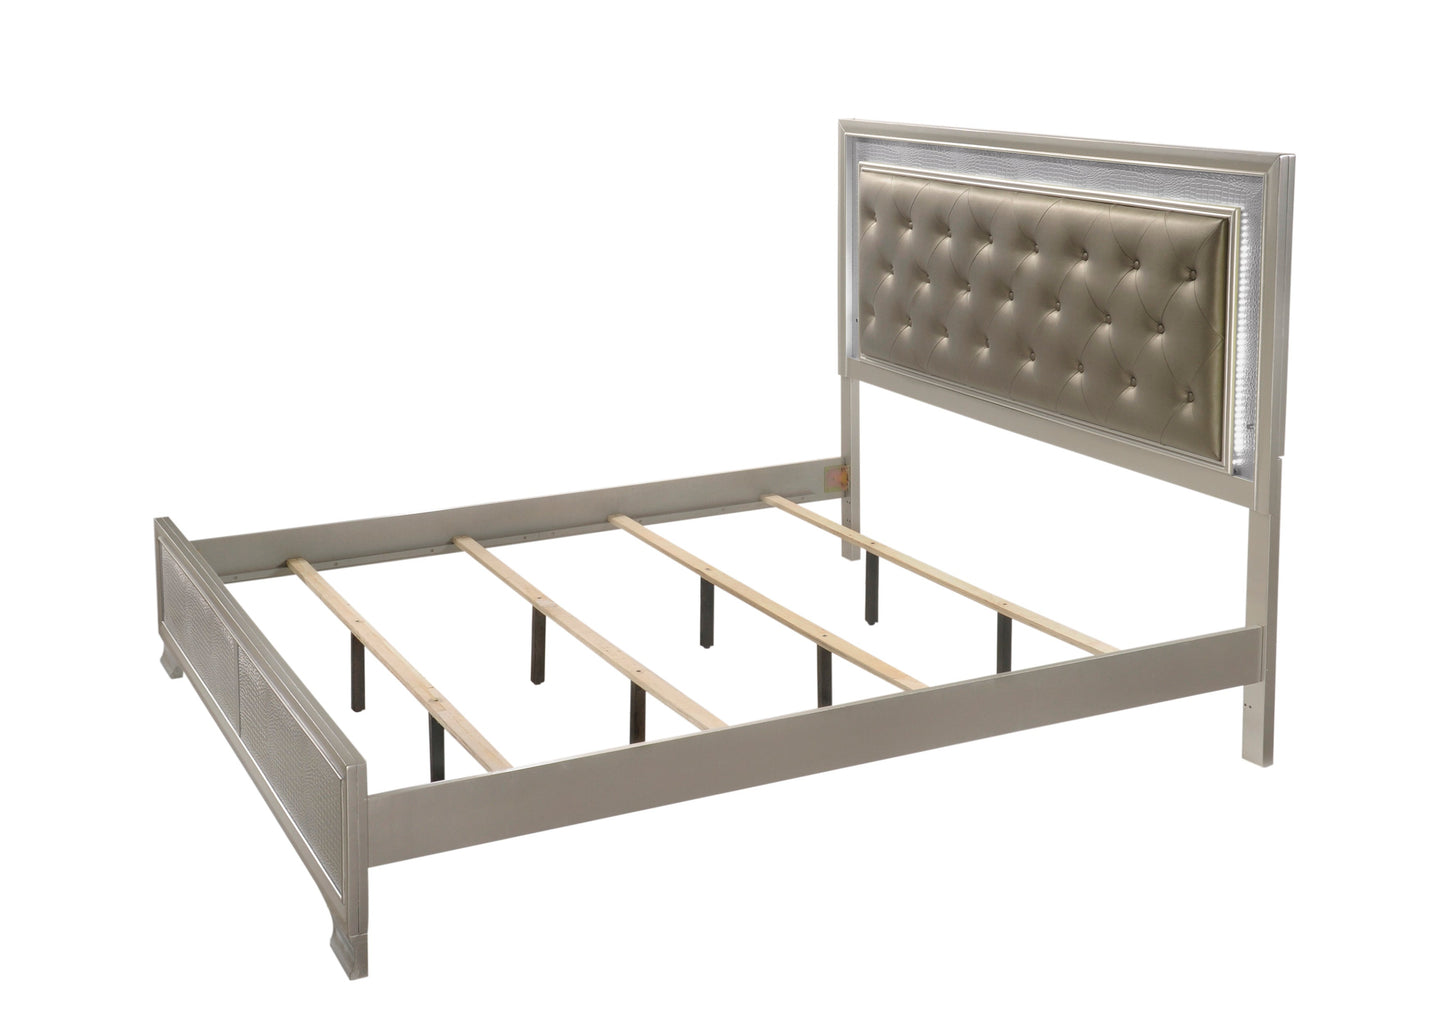 Ginebra Champagne LED Upholstered Panel Bedroom Set